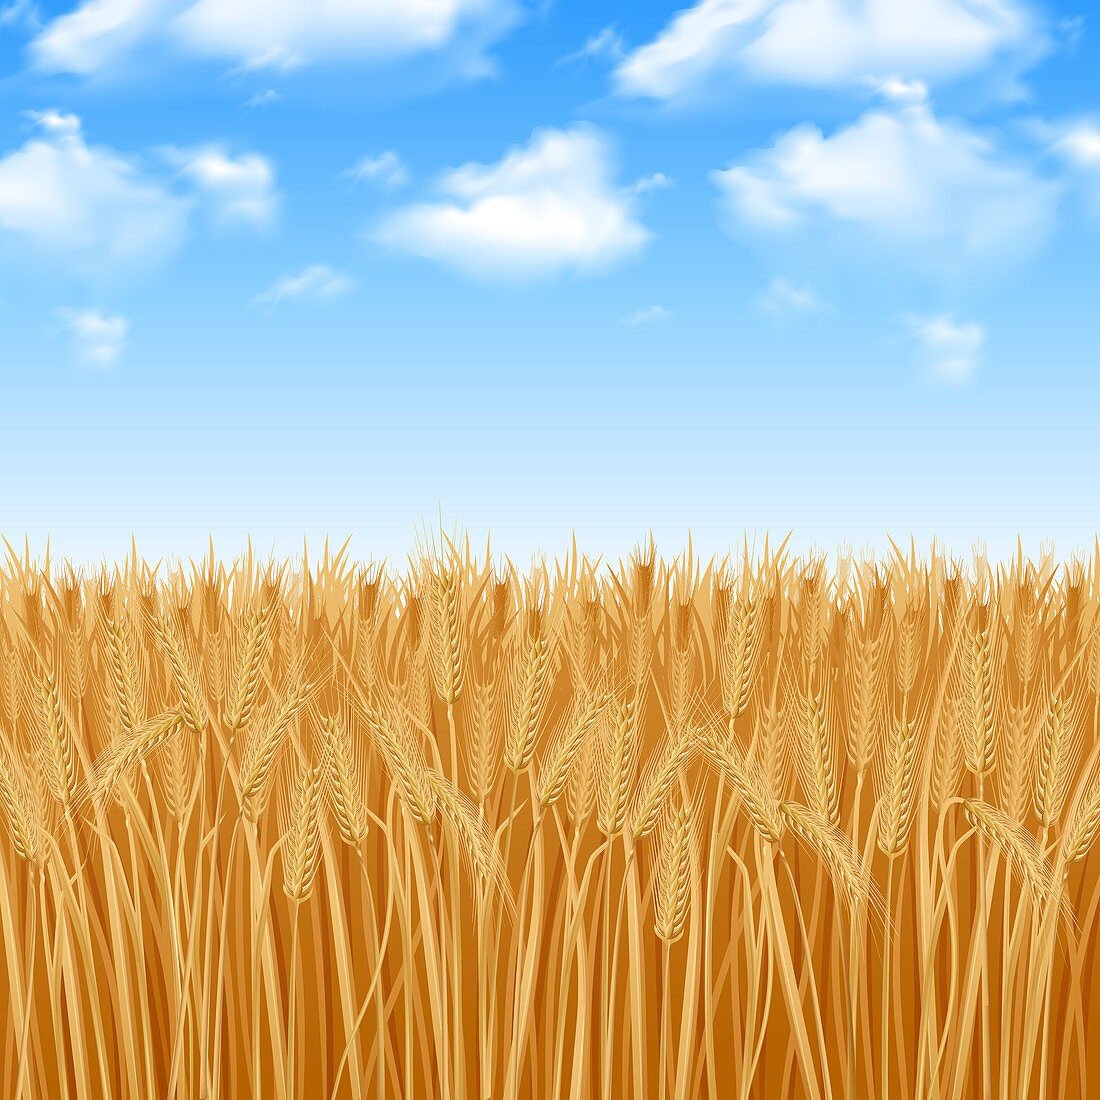 Wheat field, illustration